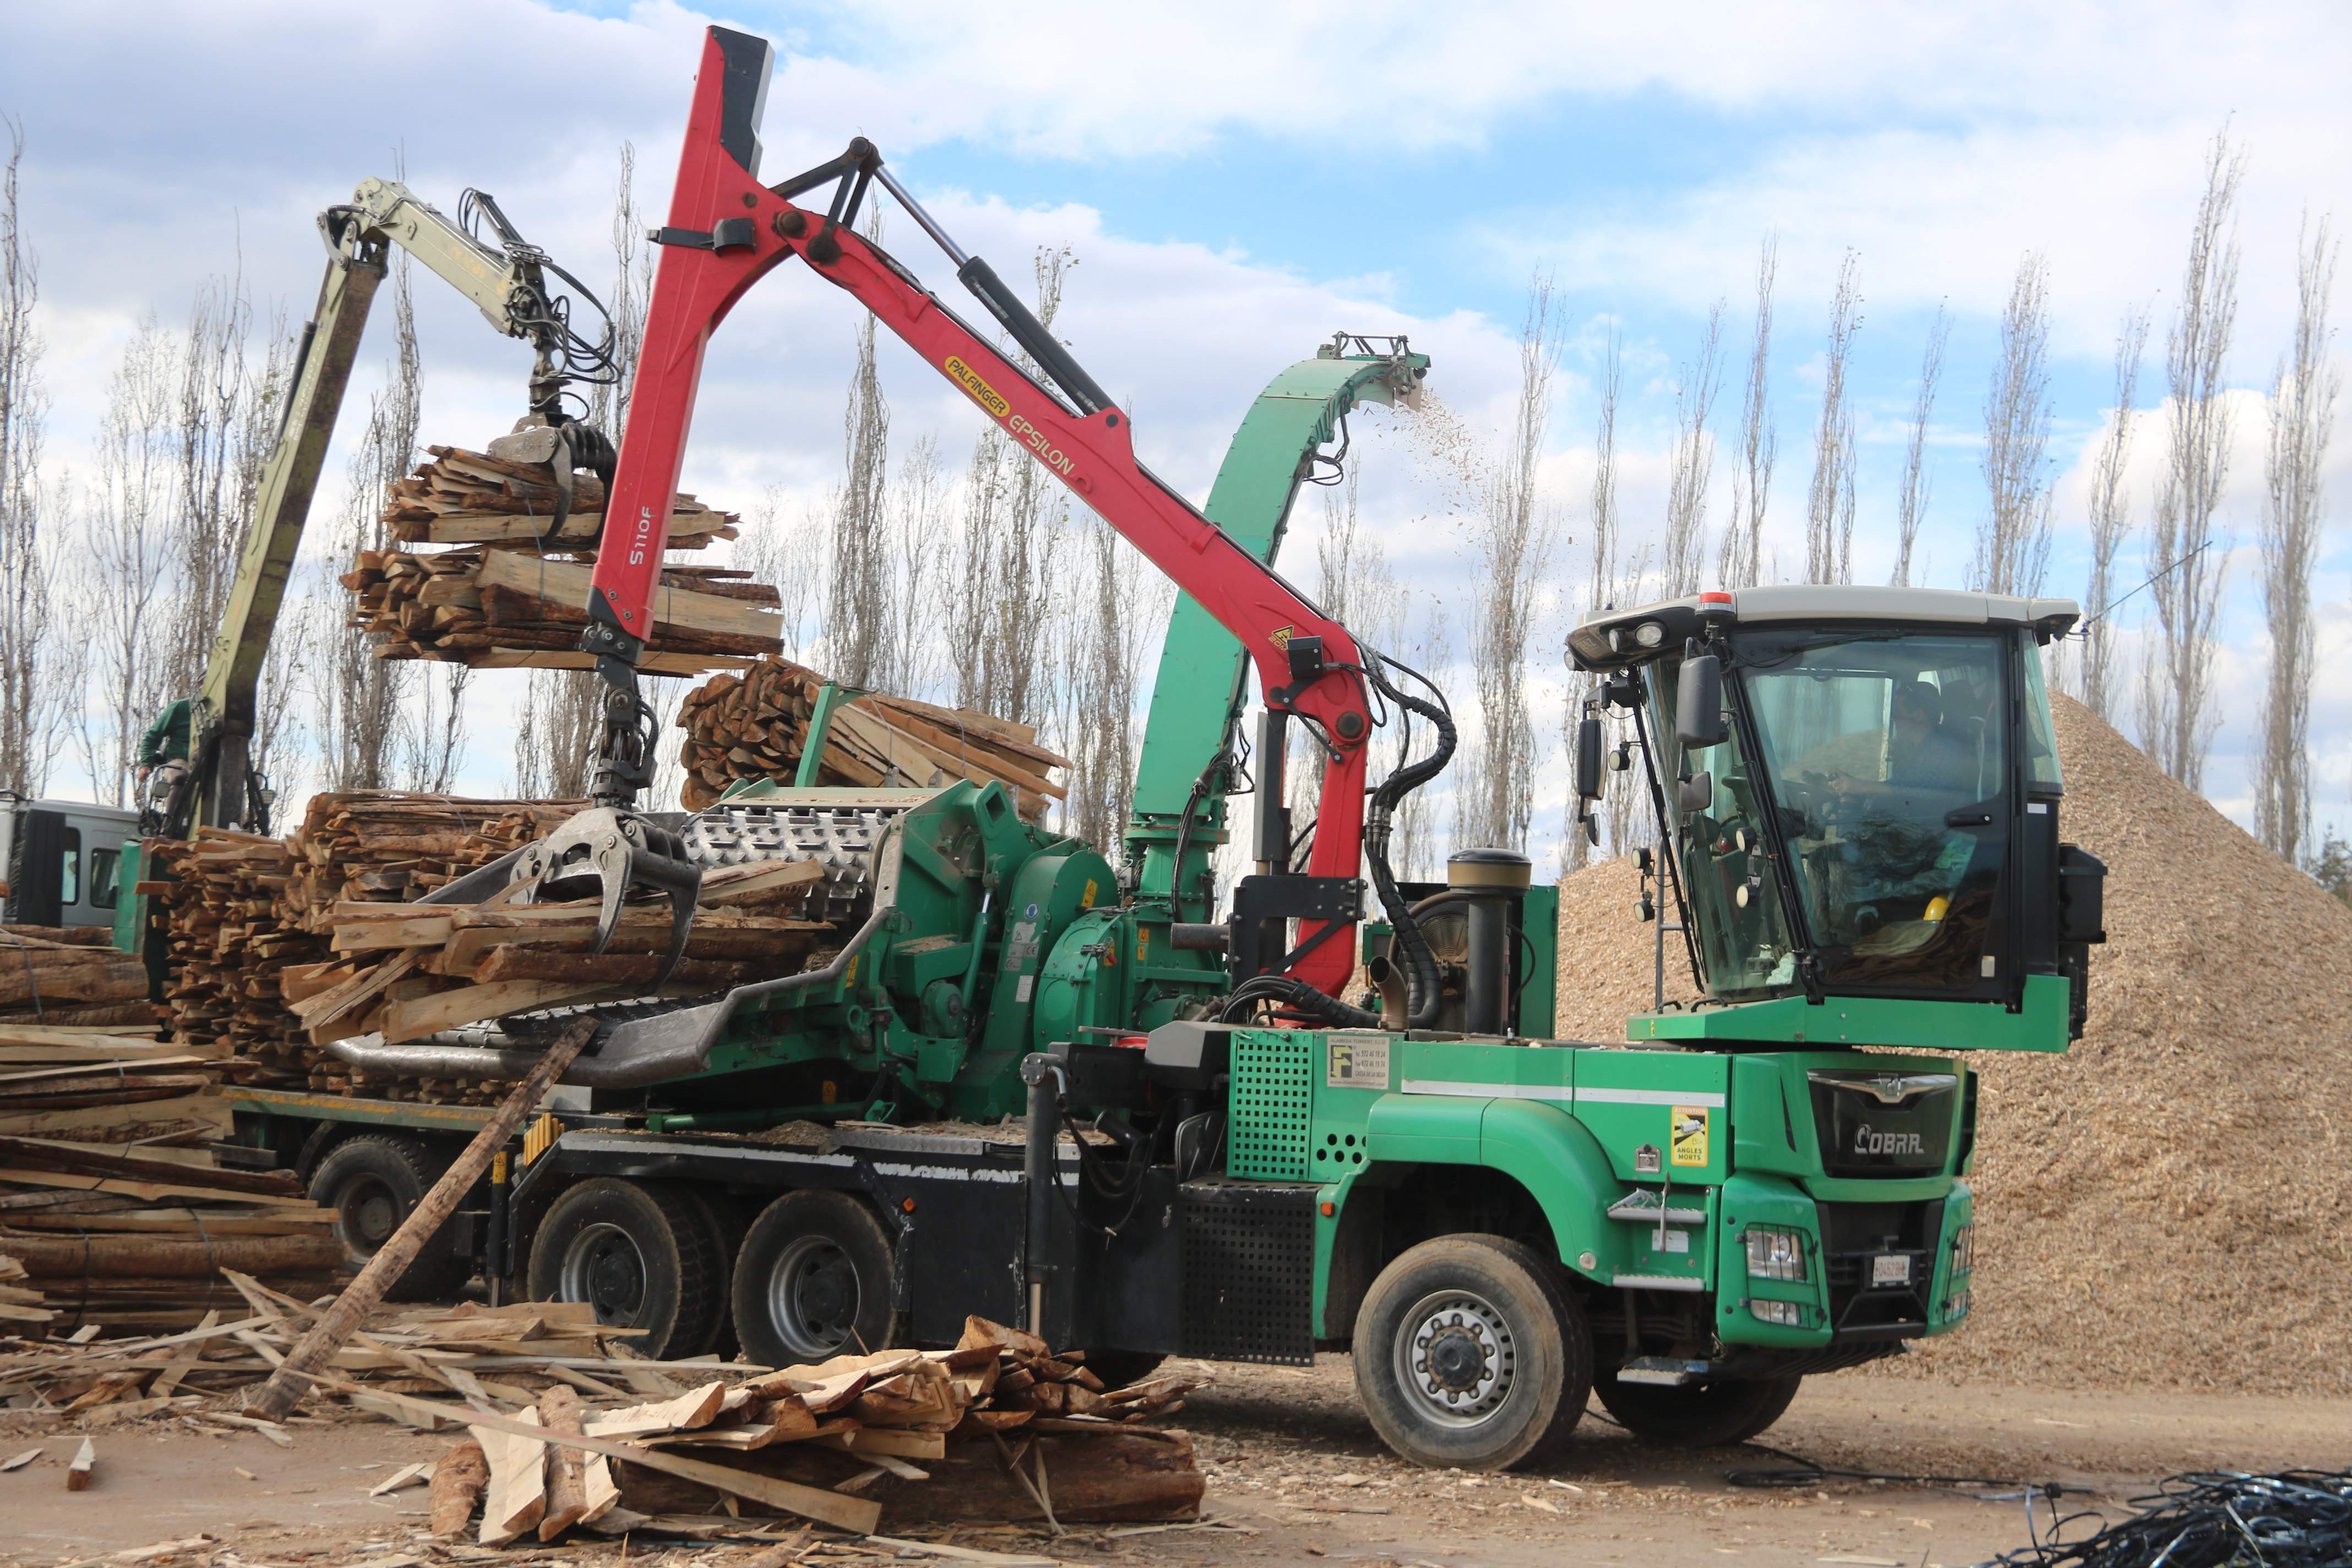 La sequera incrementa la producció de biomassa en retirar arbres morts per evitar incendis